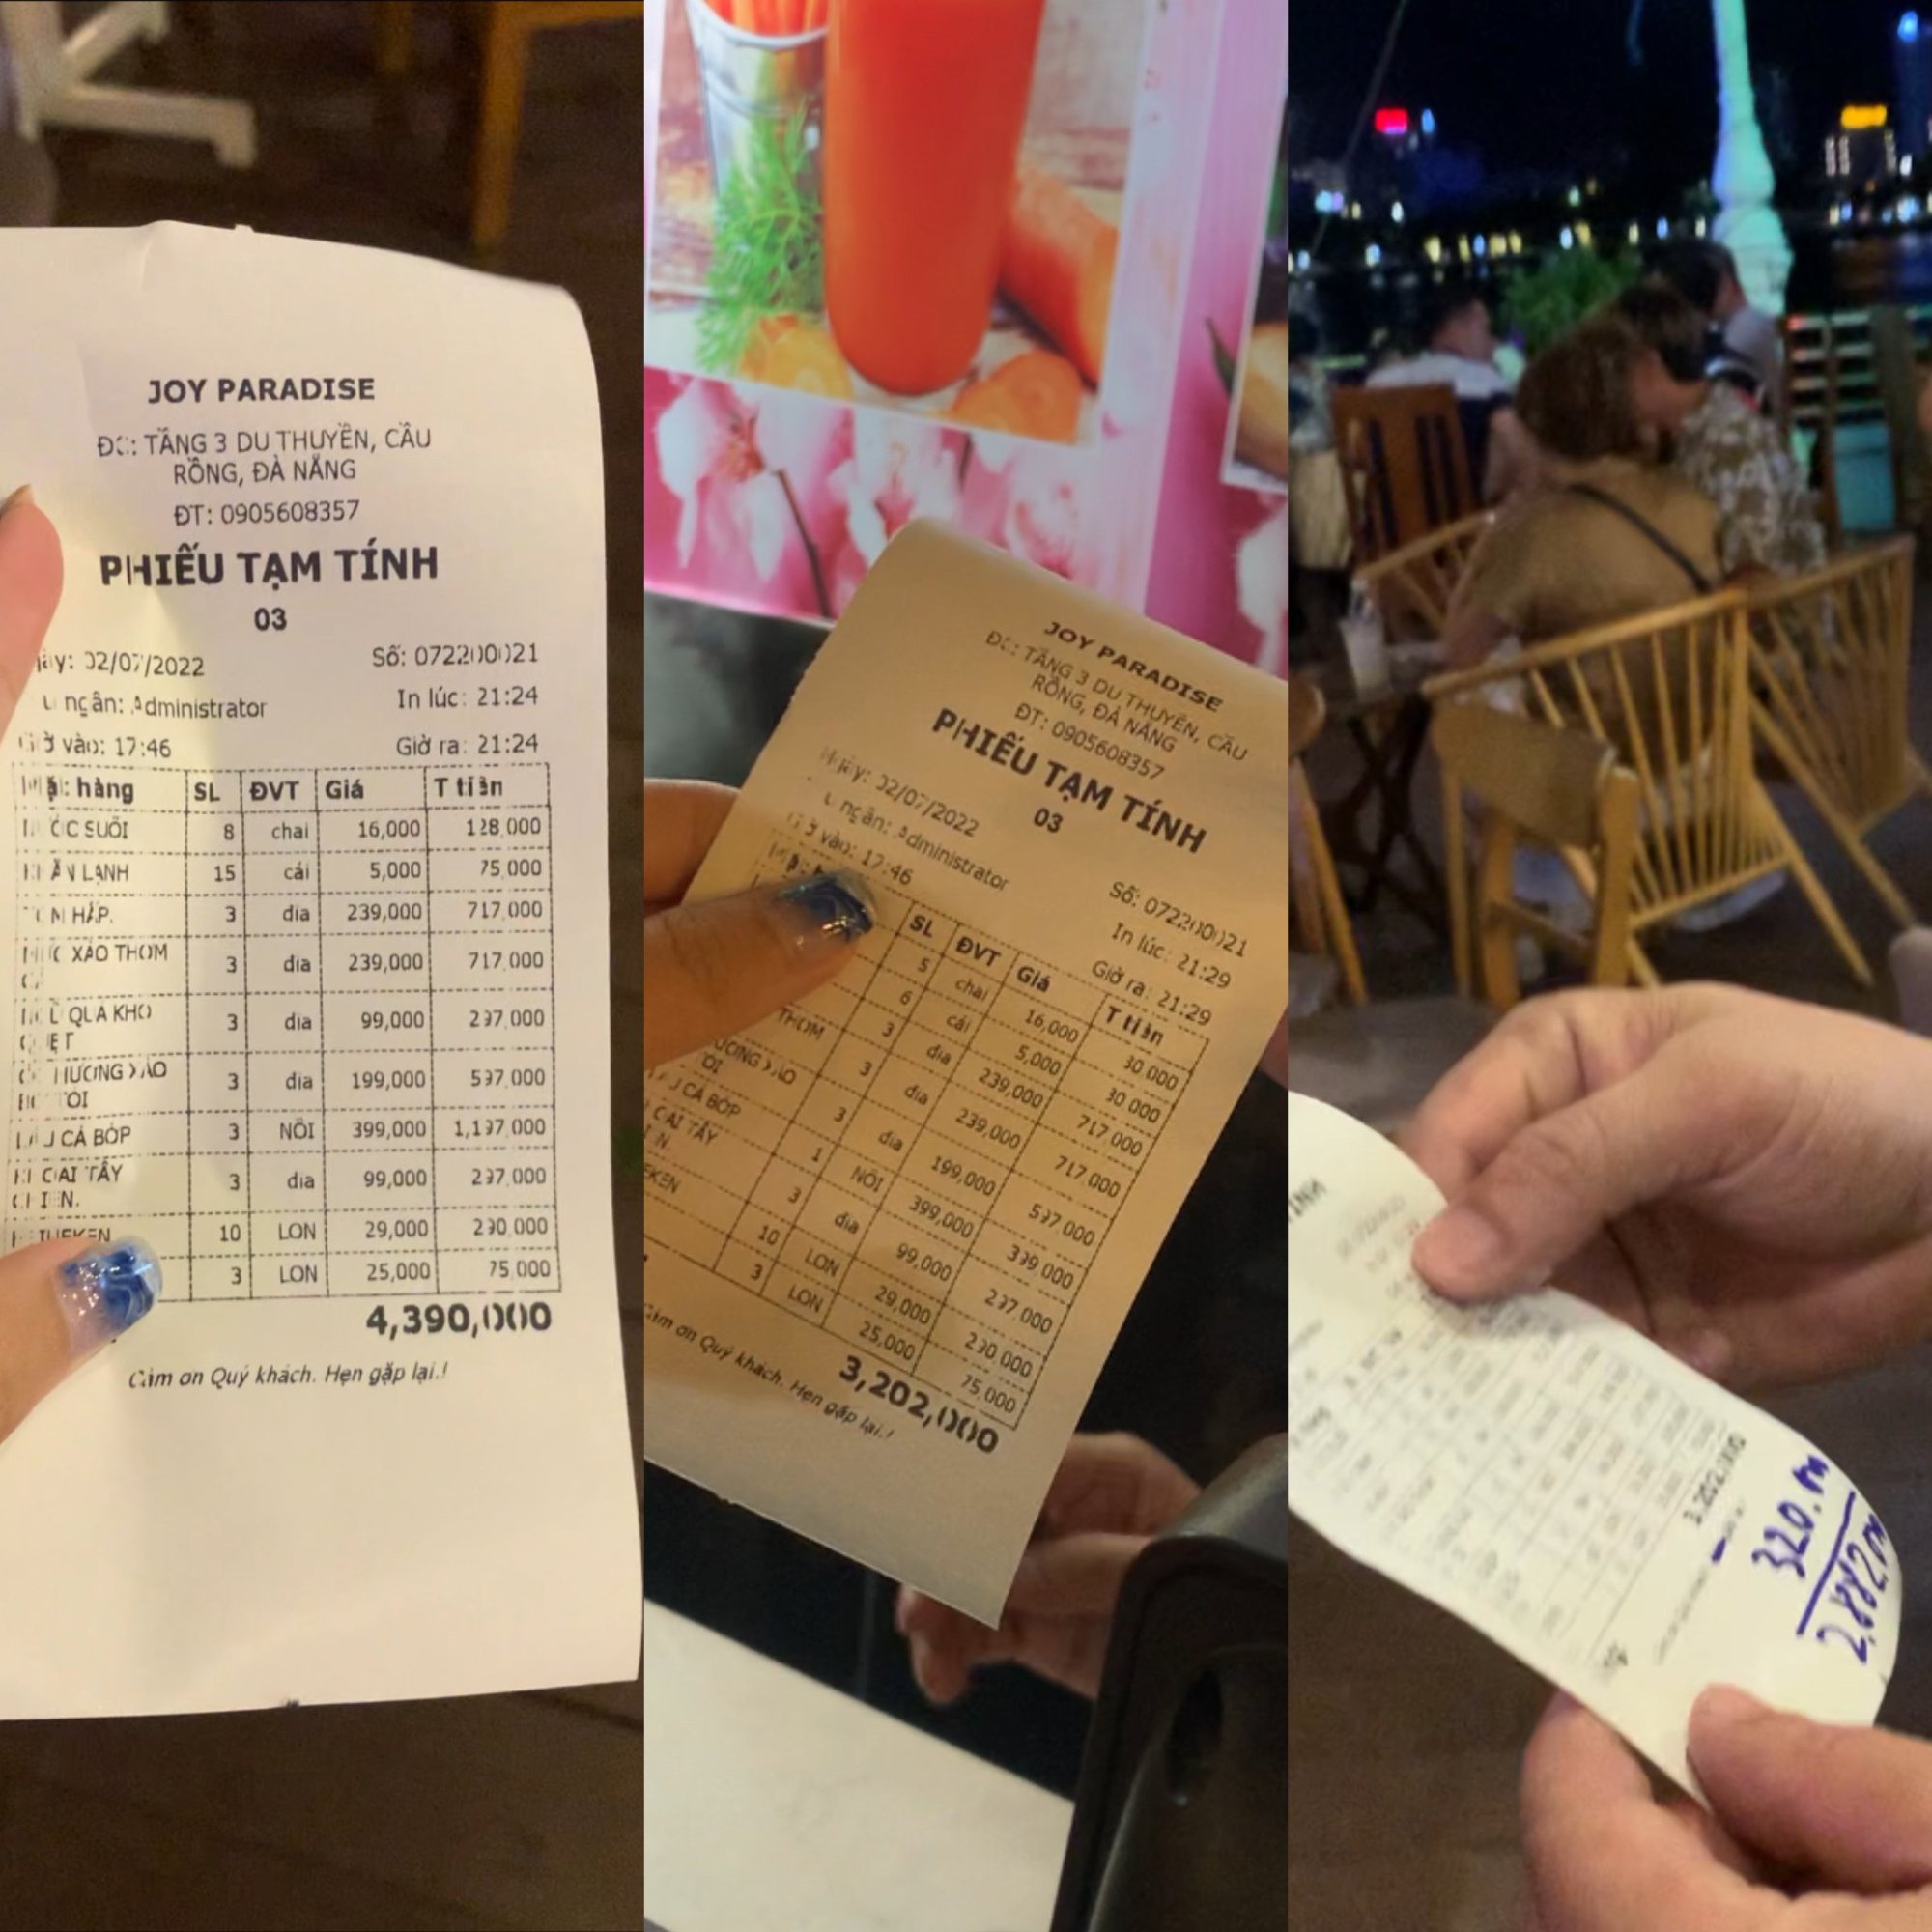 Du khách thất vọng, tố nhà hàng Đà Nẵng với chất lượng phục vụ tồi - Ảnh 1.